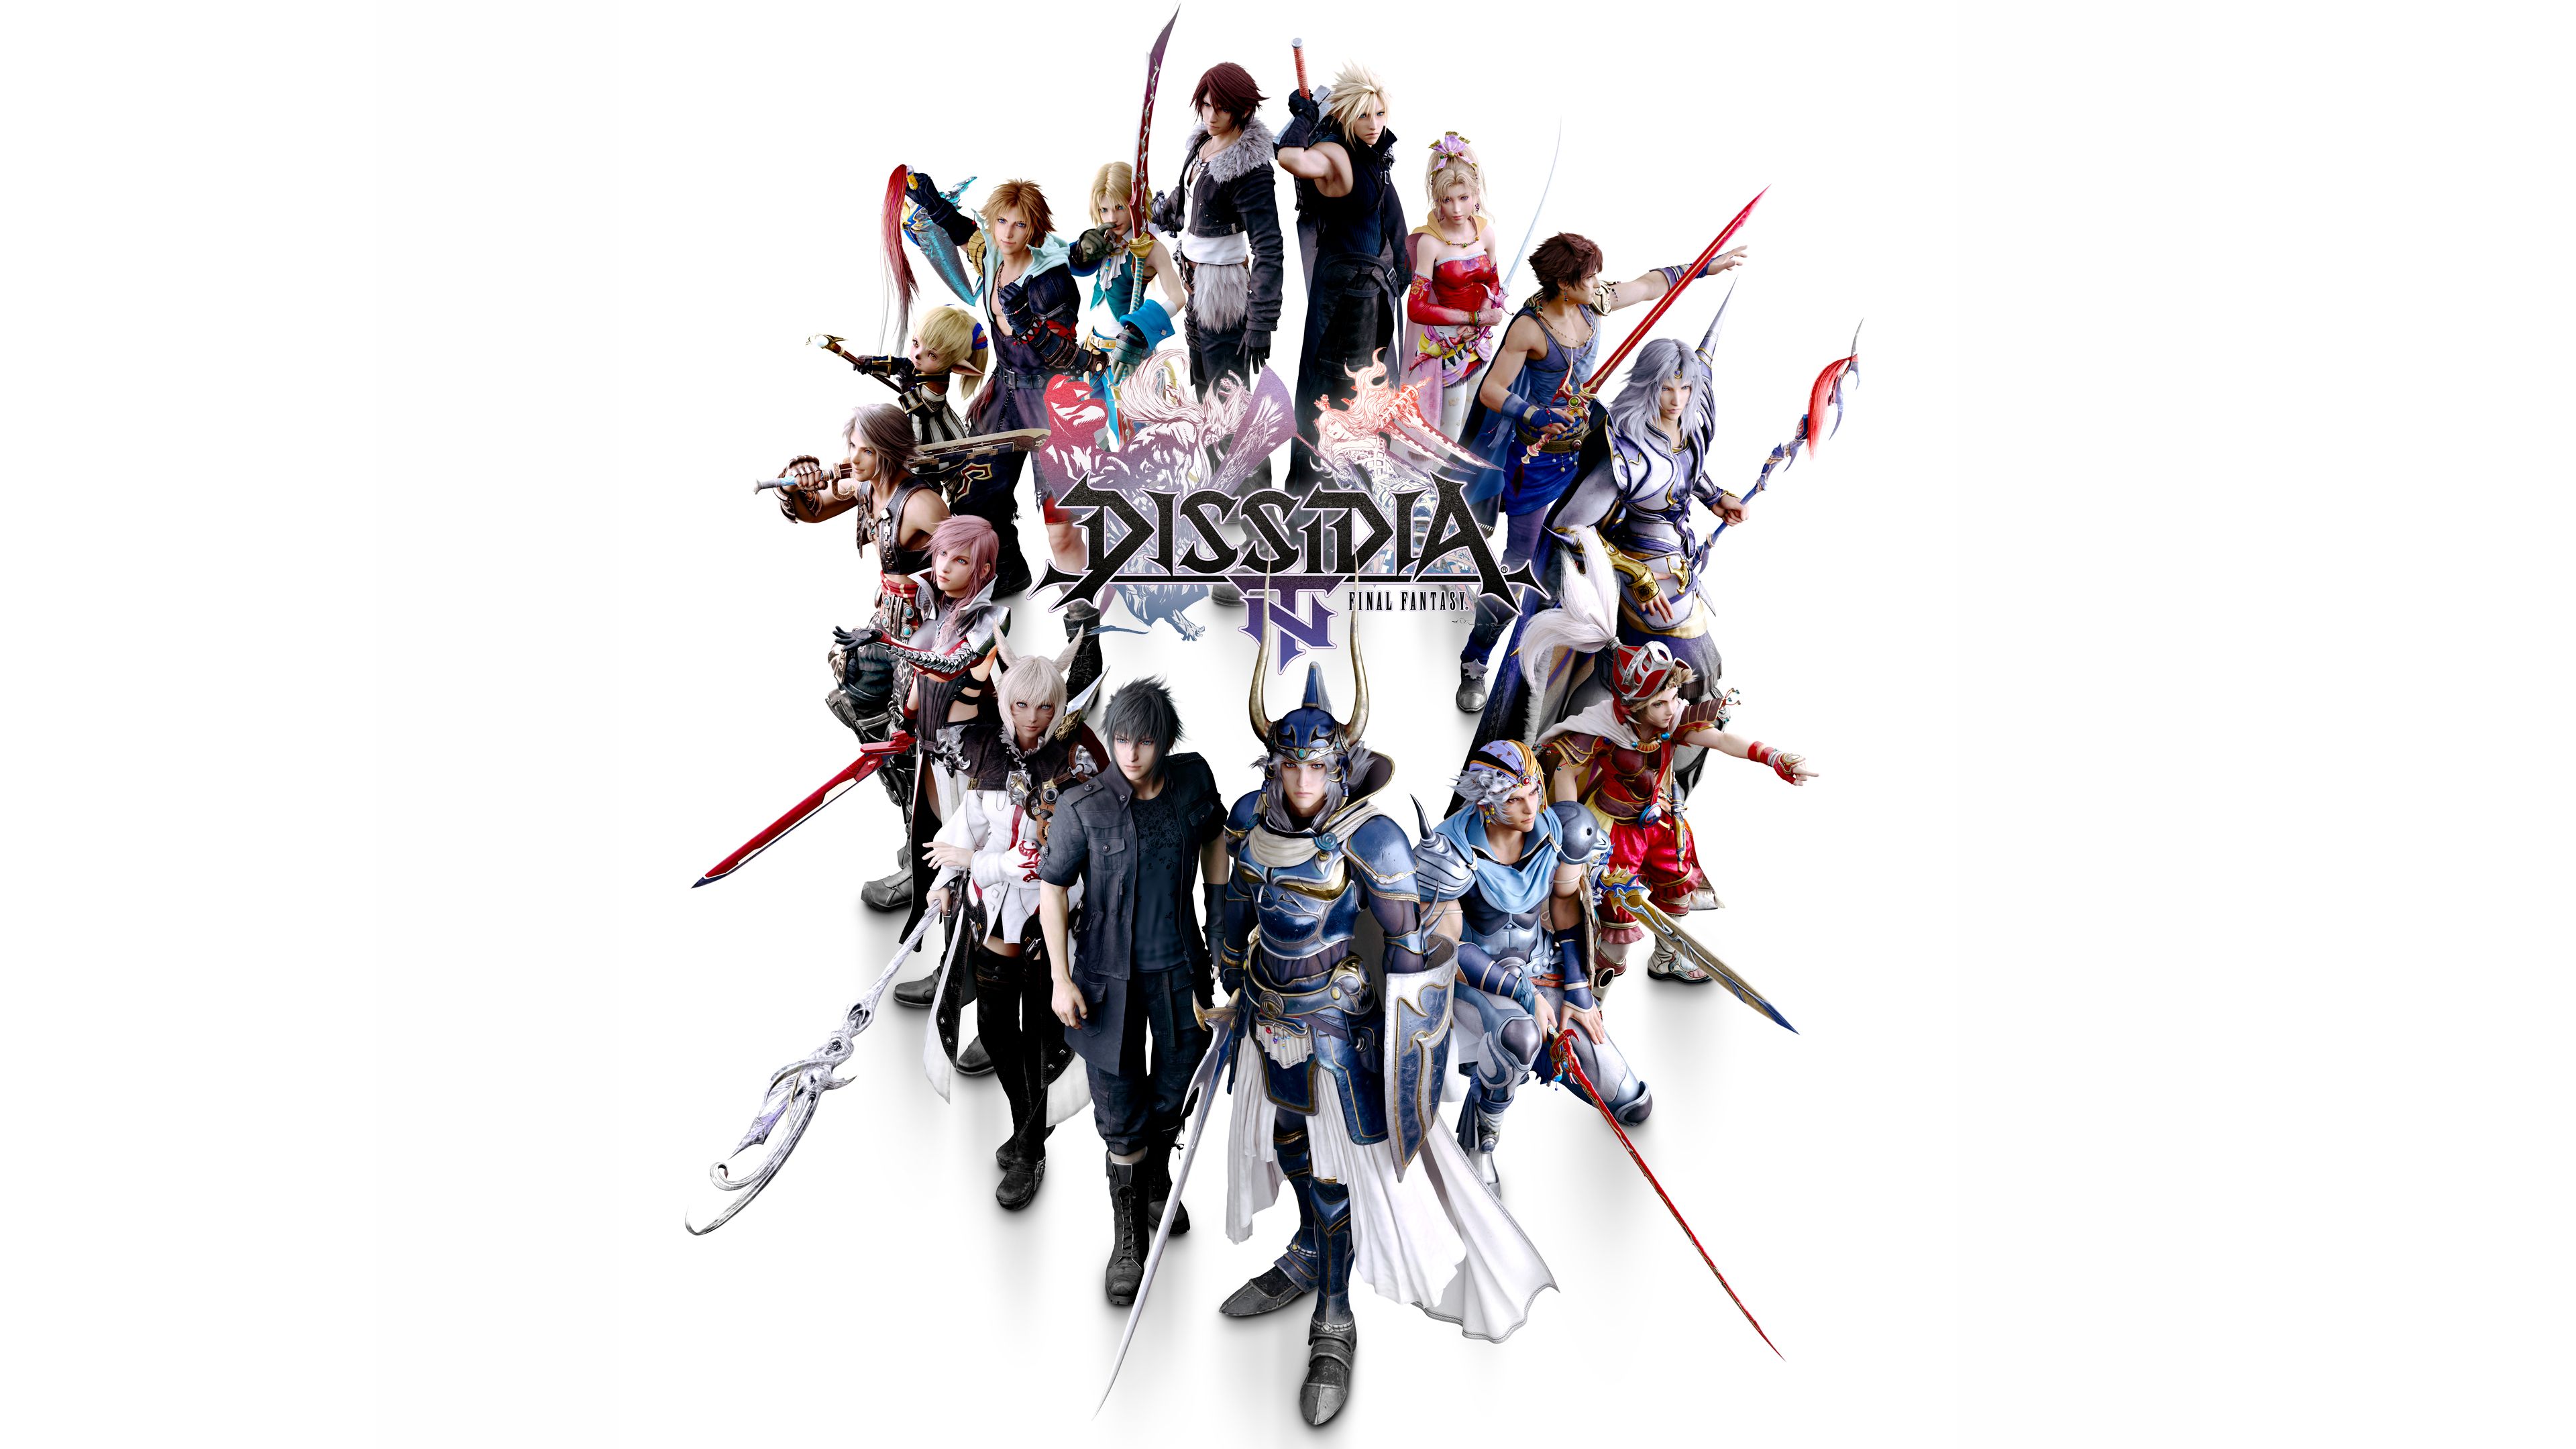 Скачать обои Dissidia Final Fantasy Nt на телефон бесплатно